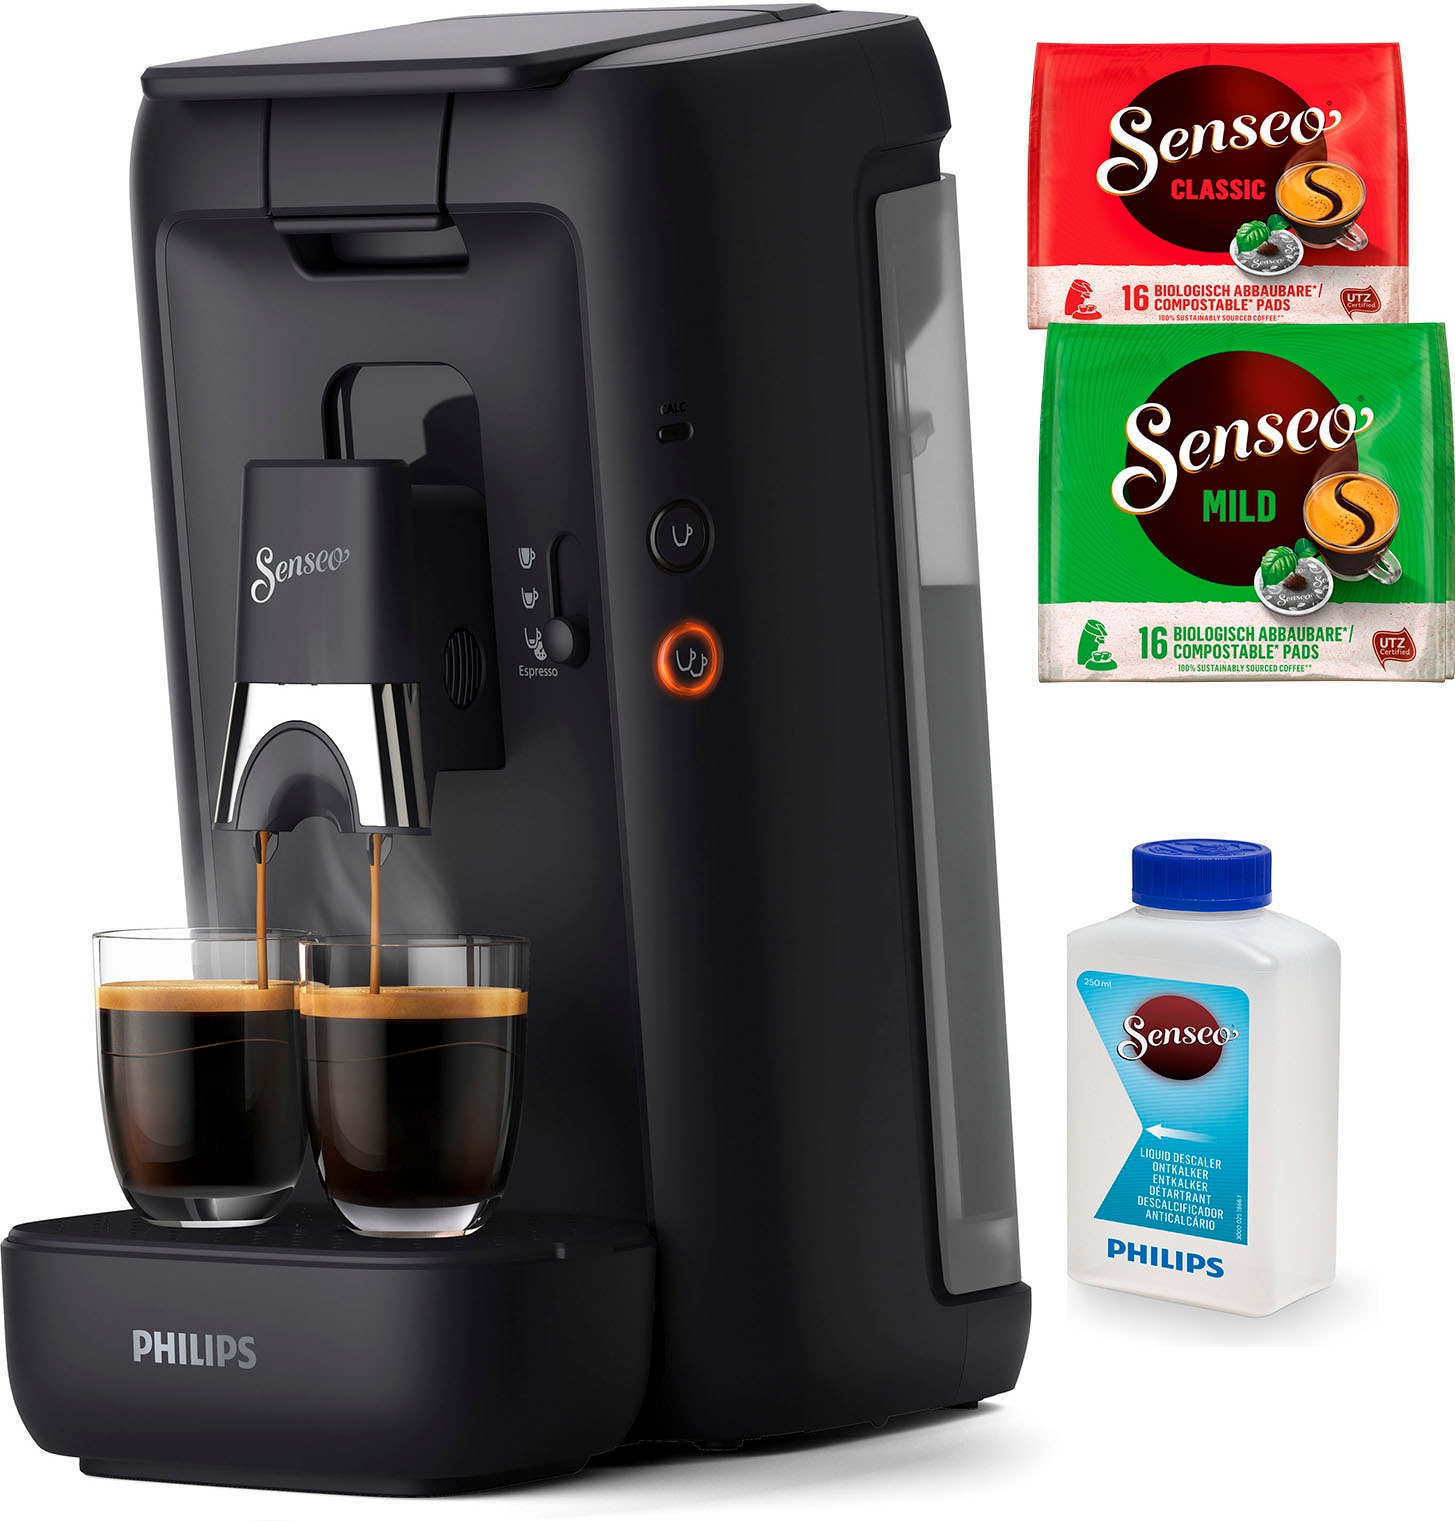 Philips Senseo Kaffeepadmaschine »Maestro CSA260/60, aus 80% recyceltem Plastik, +3 Kaffeespezialitäten«, Memo-Funktion, inkl. Gratis-Zugaben im Wert von € 14,- UVP